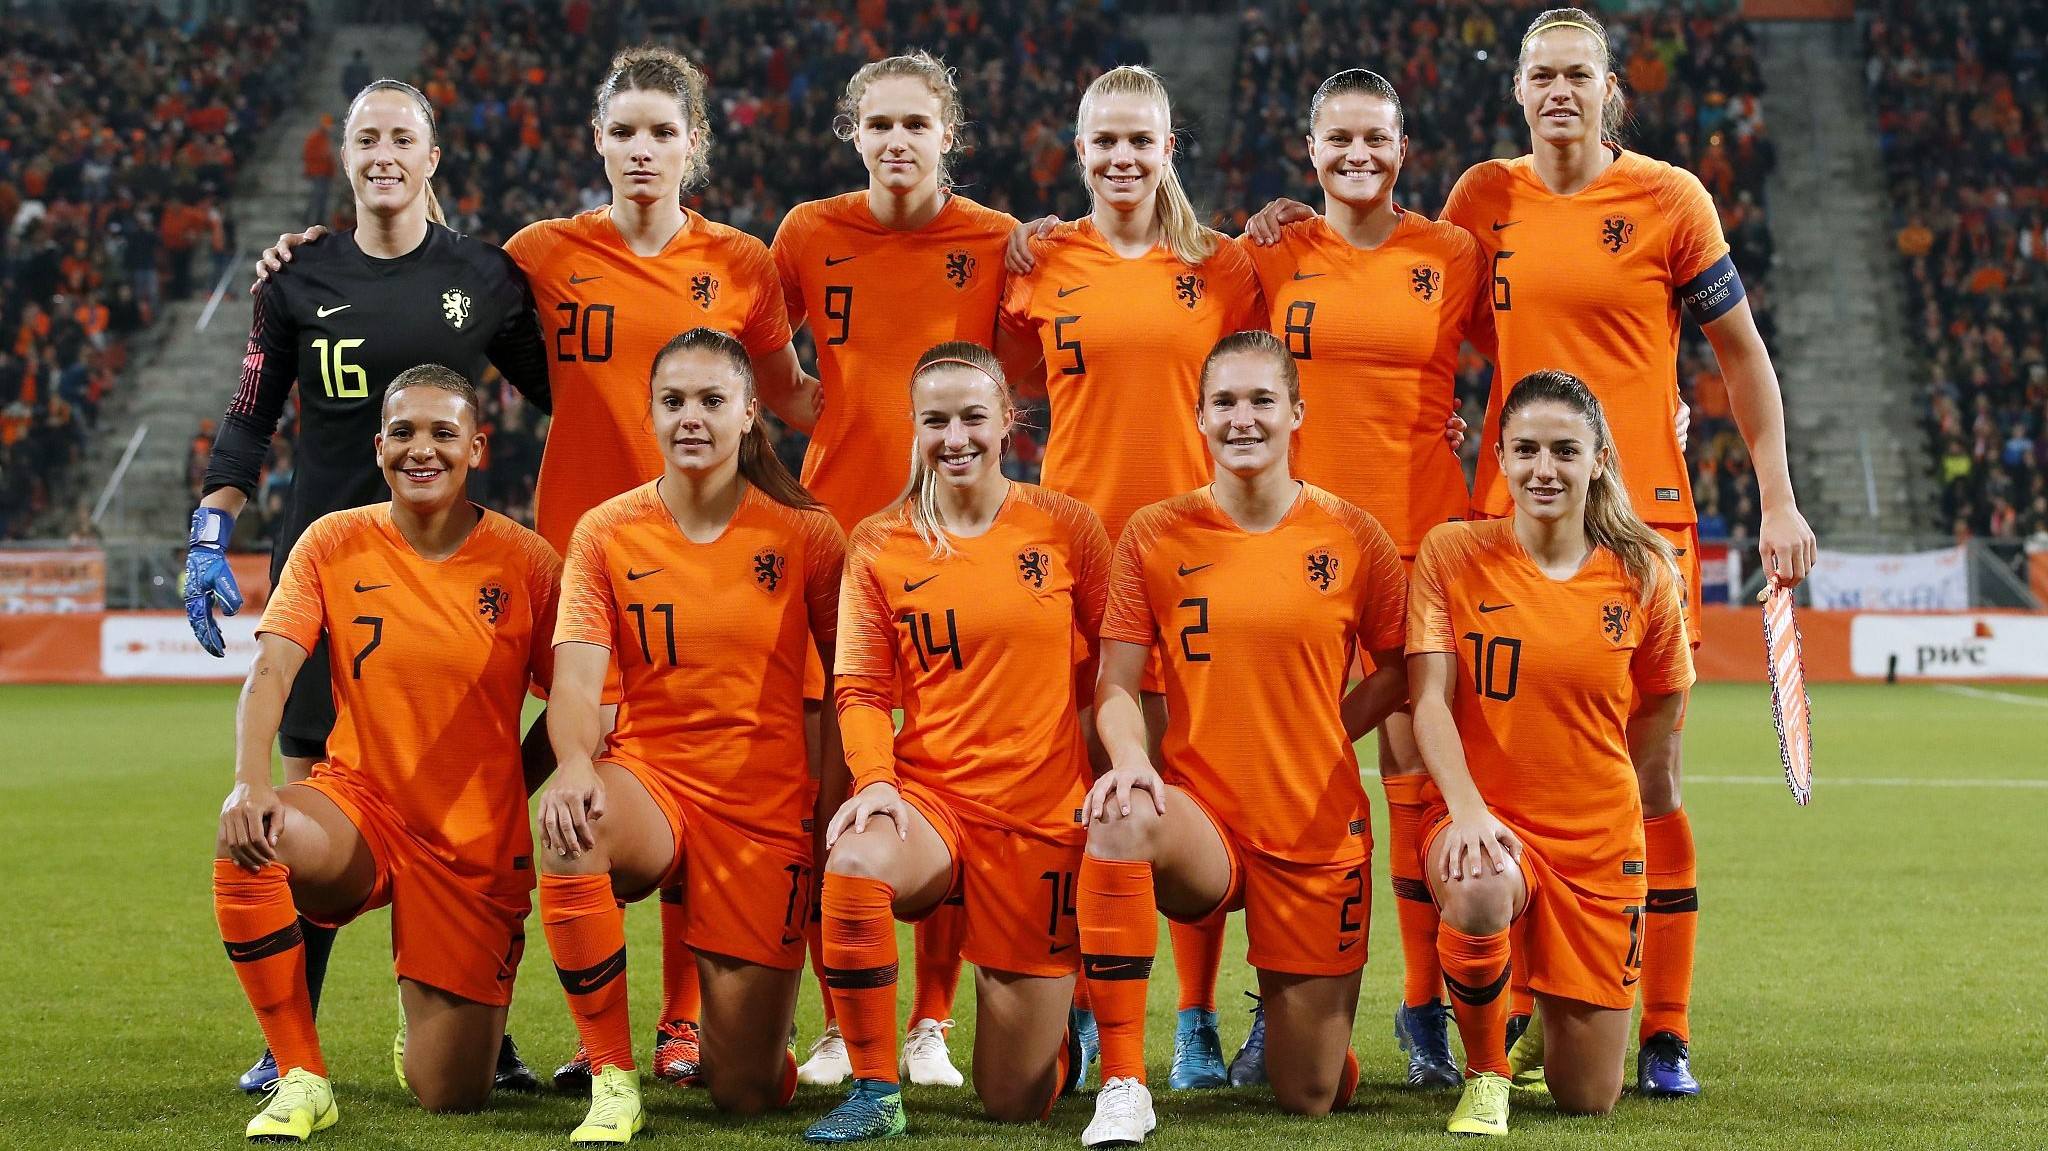 Netherlands Female Football Players / Netherlands wins women's European